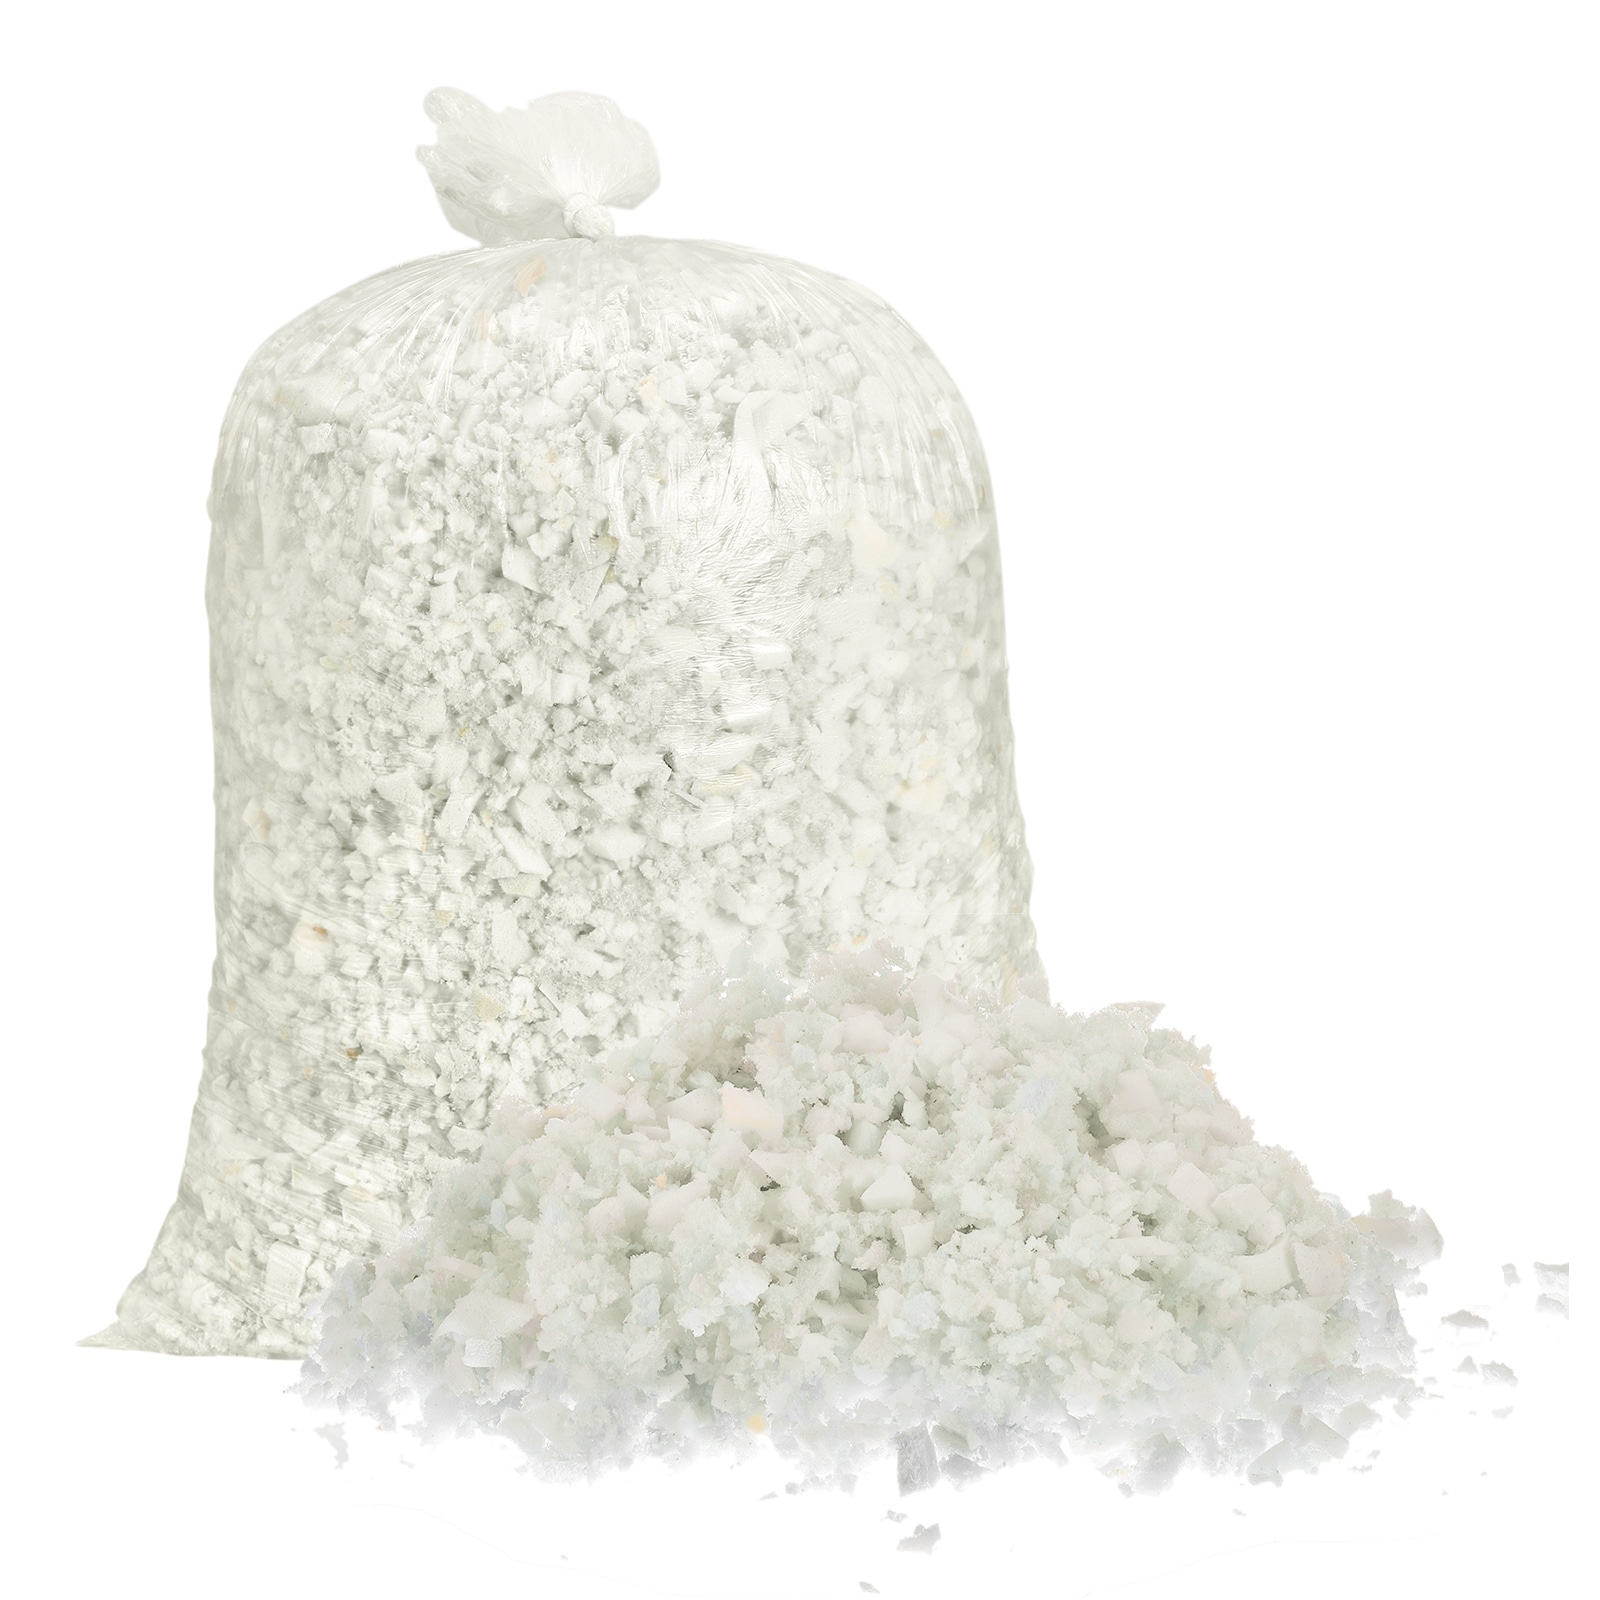  Shredded Memory Foam Filling for Bean Bag Filler Foam